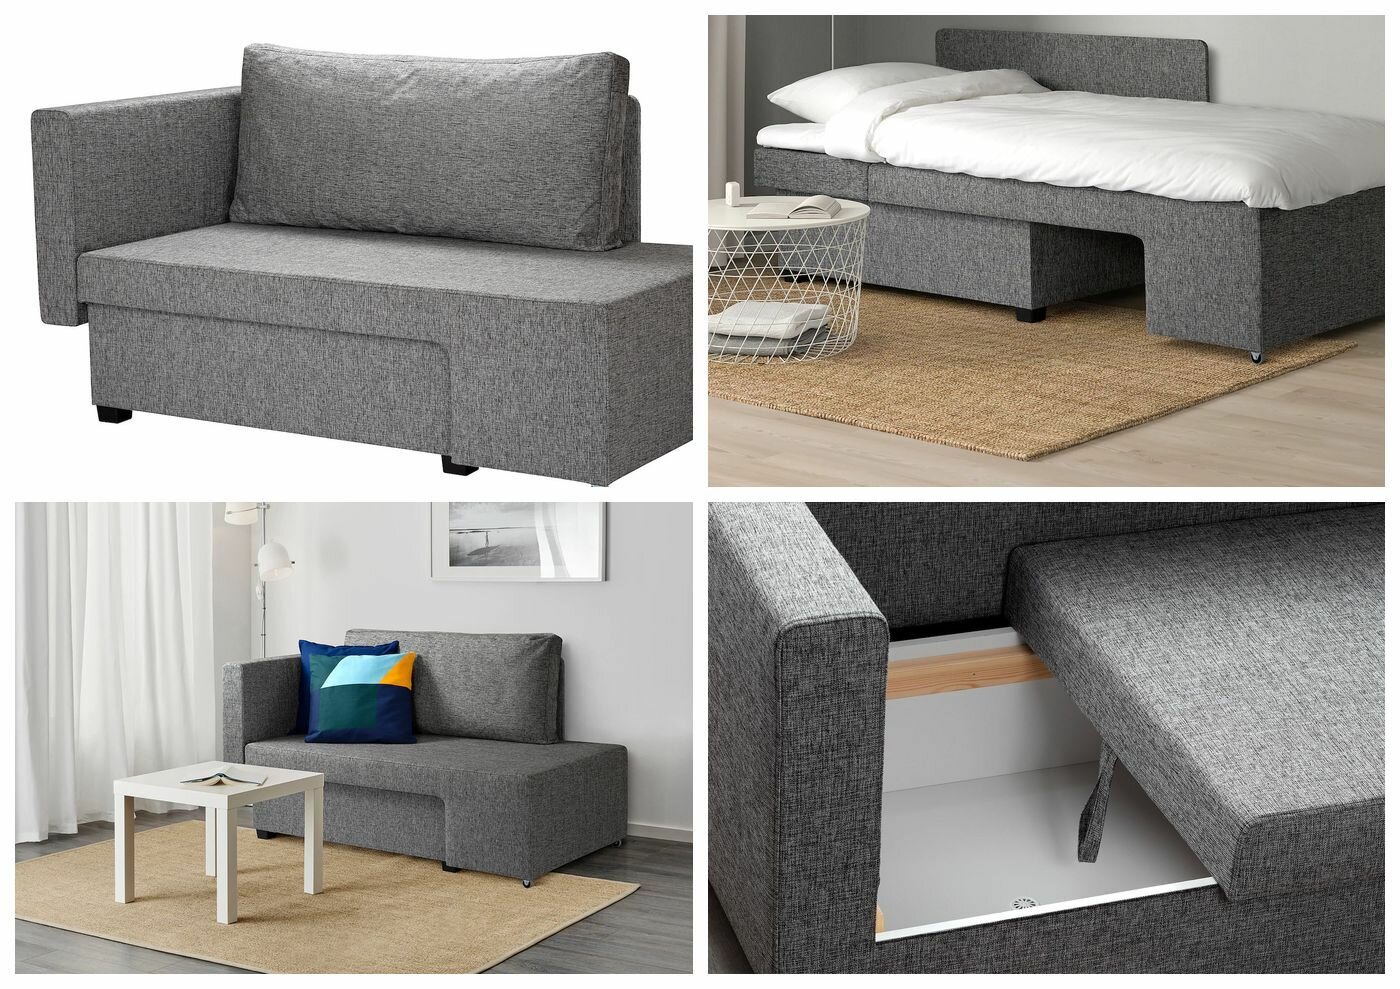 Грэлльста 2-местный диван-кровать, Сандсбру серый, Сандсбру серый